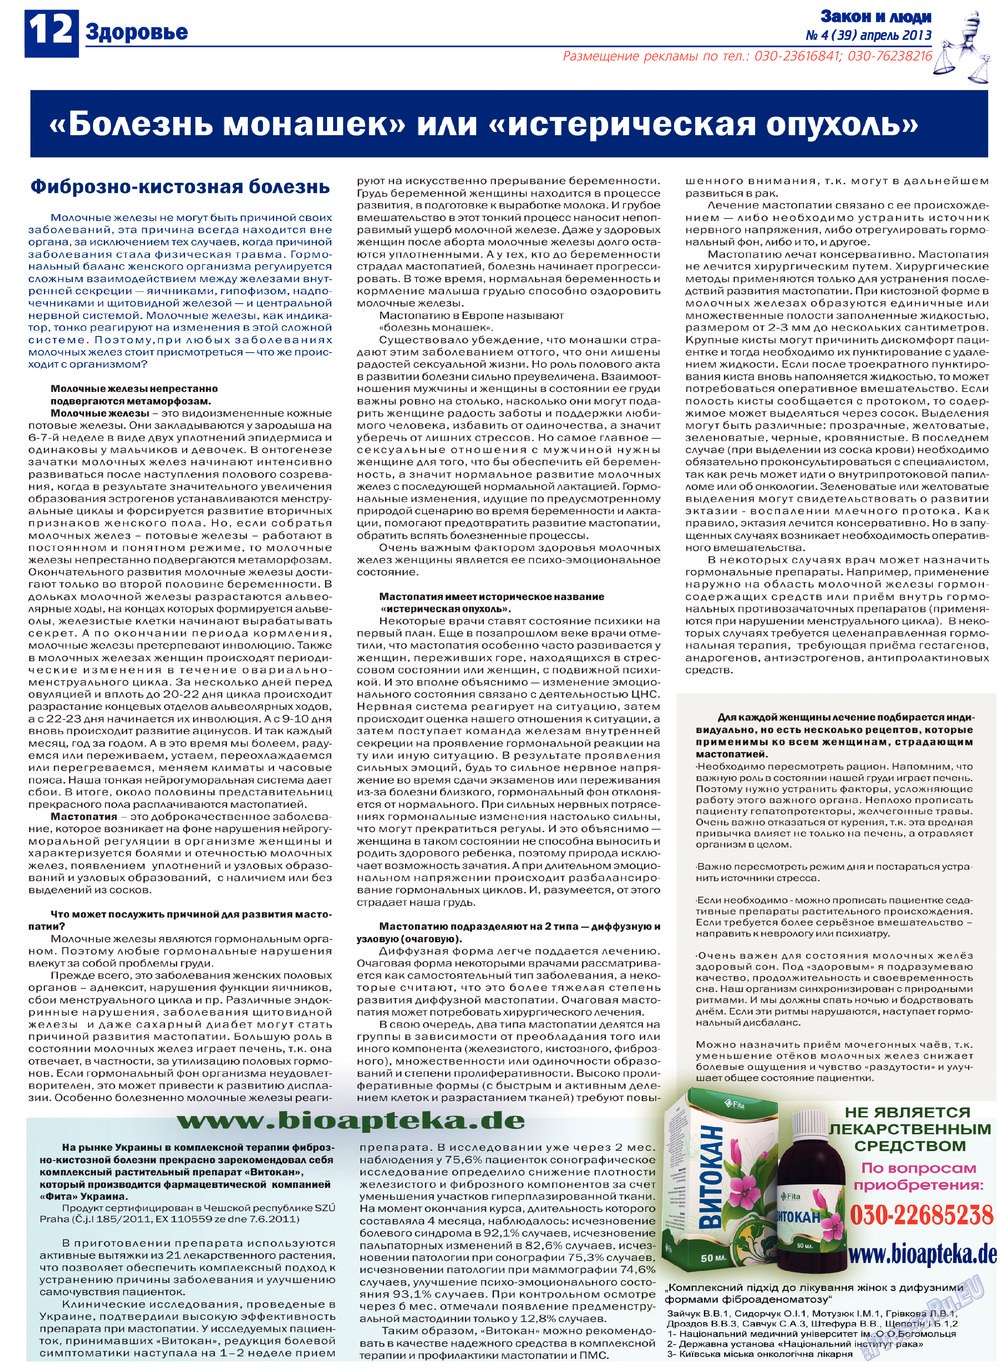 Закон и люди, газета. 2013 №4 стр.12